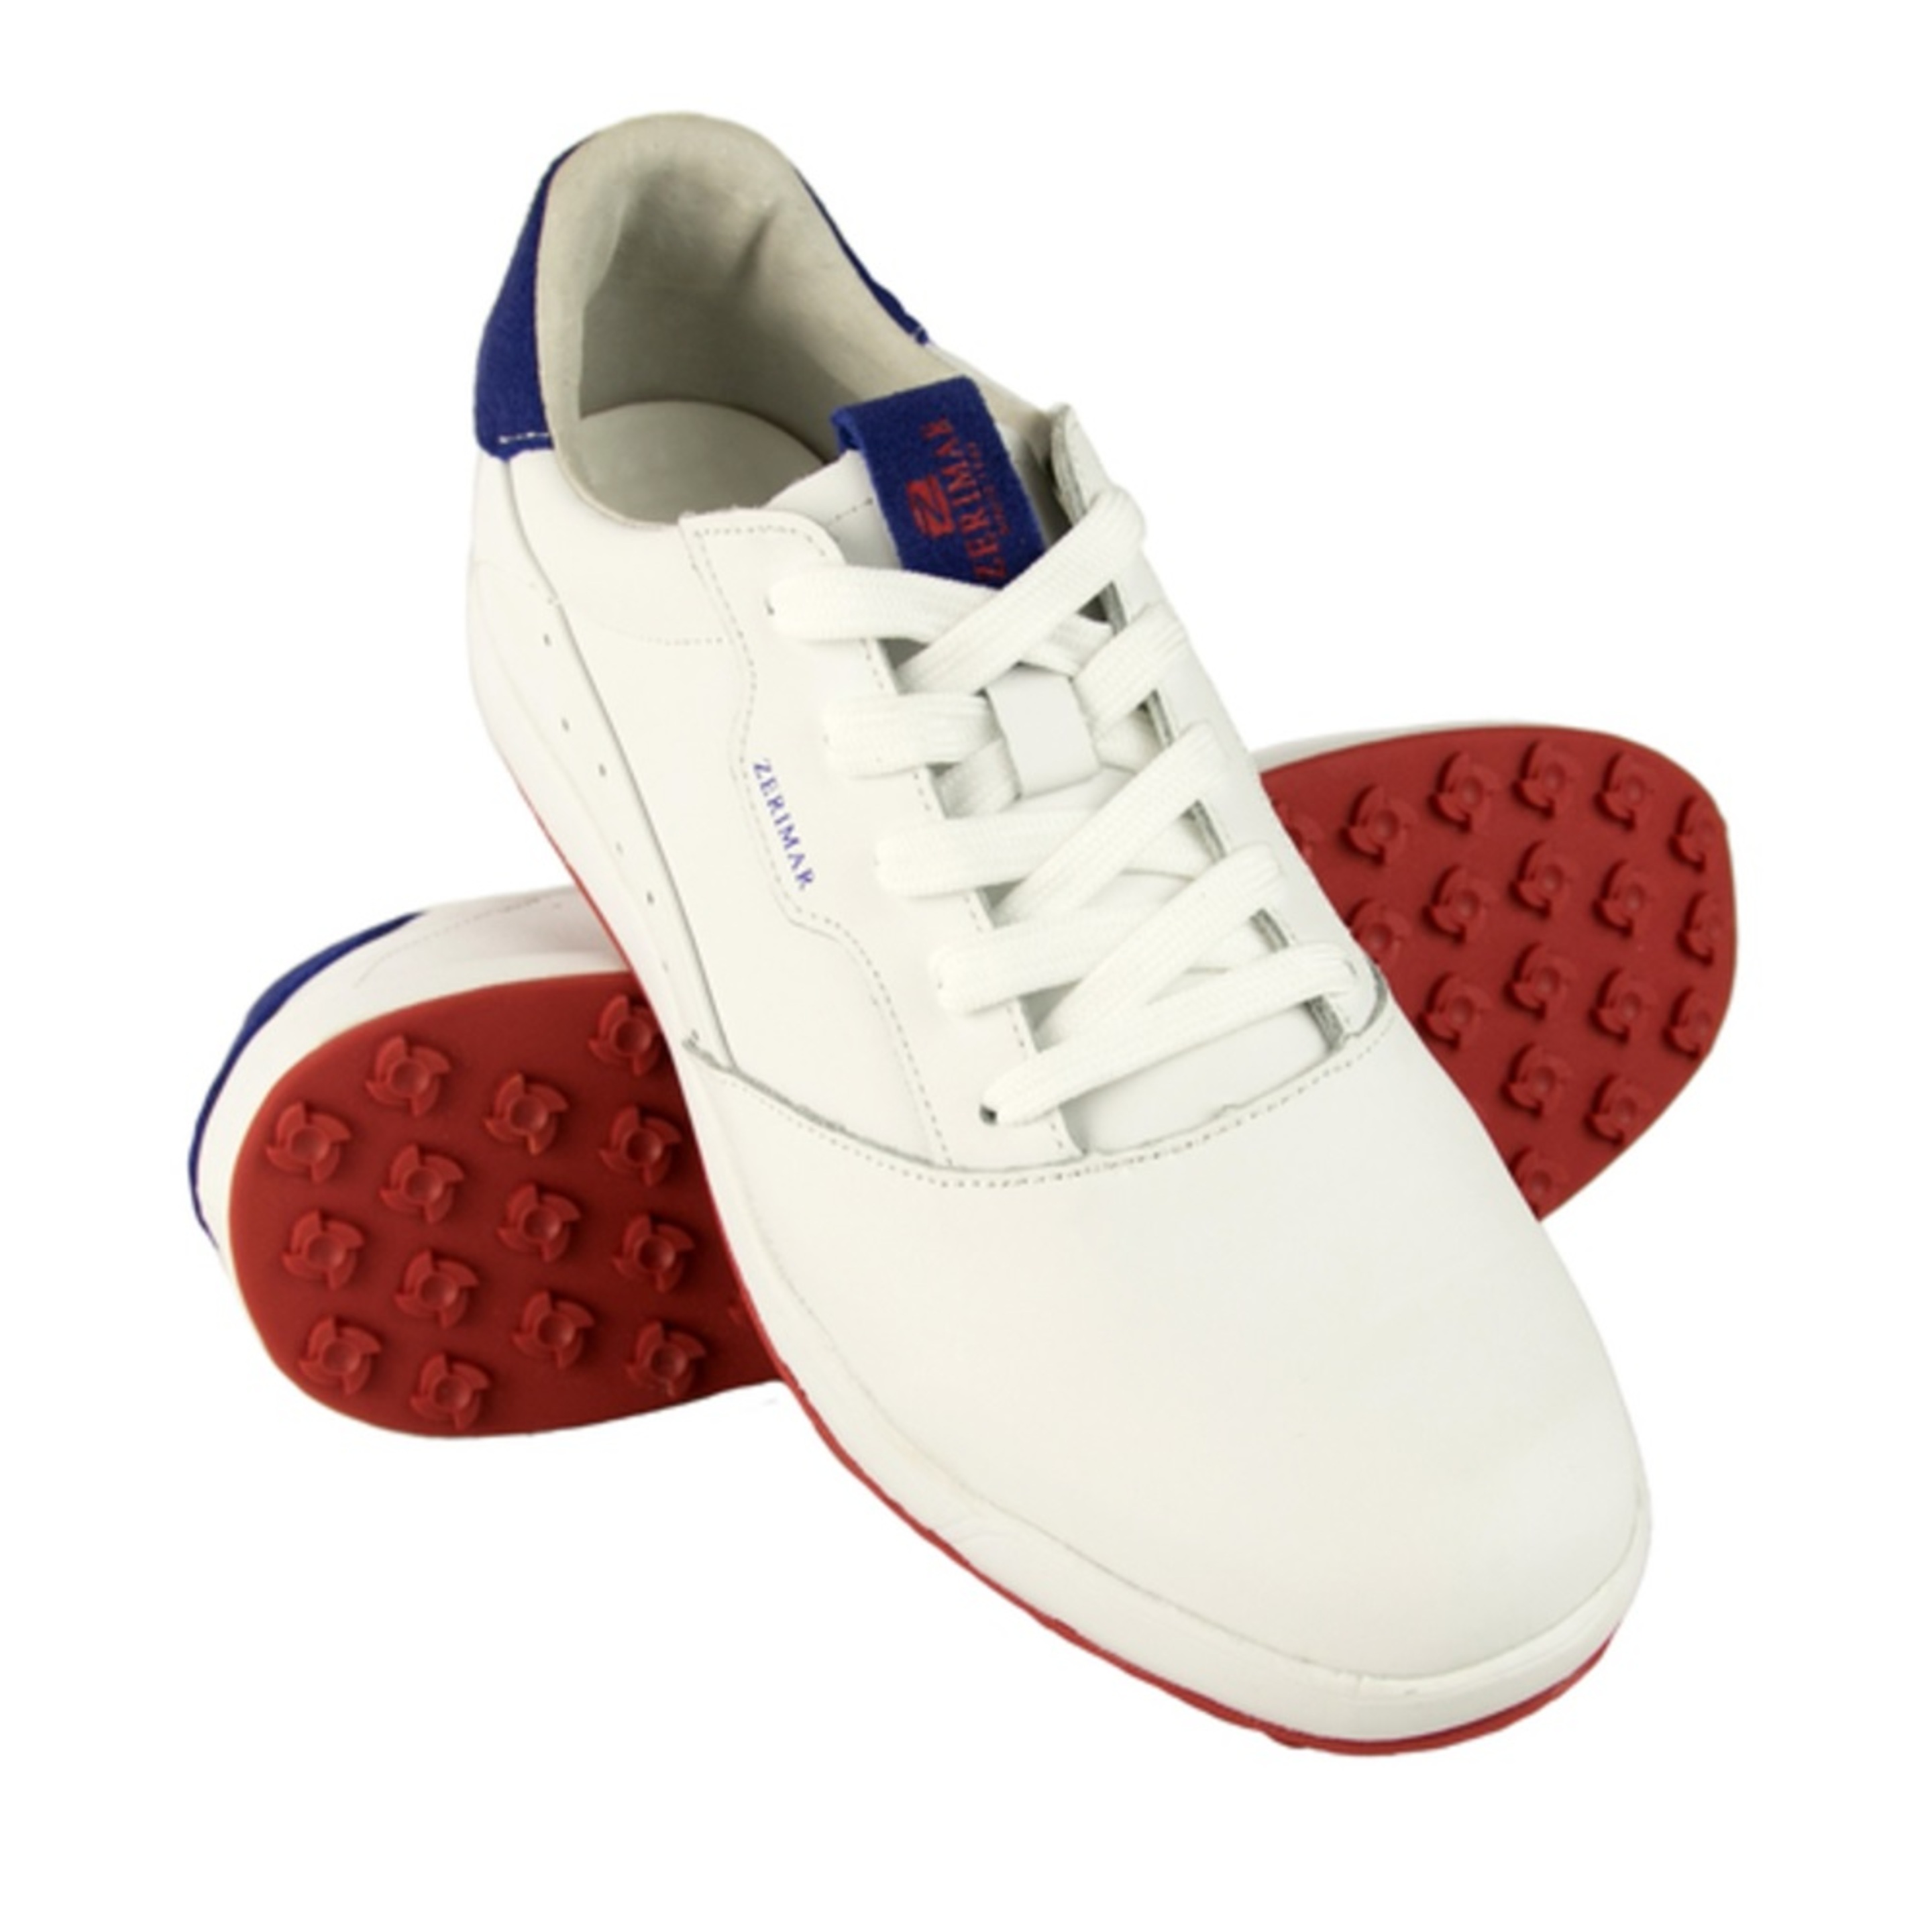 Zapatos De Golf Zerimar Cuero - Blanco/Azul - Zapatos Golf Unisex Zapatillas Piel  MKP